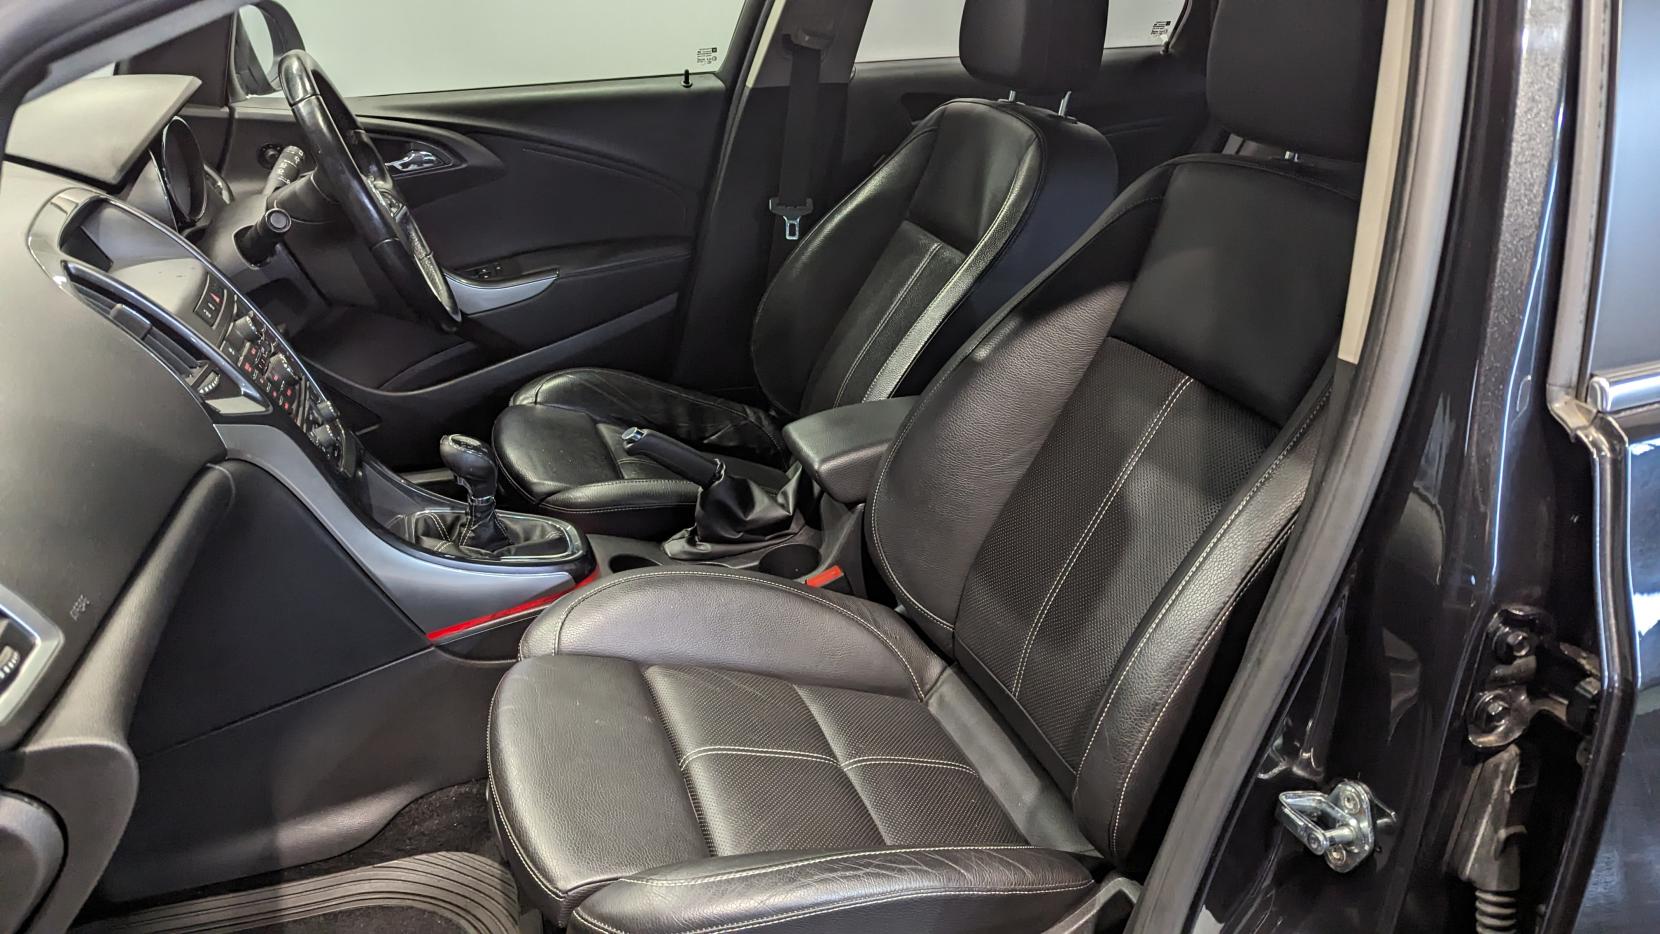 Vauxhall Astra 1.6 16v Elite Hatchback 5dr Petrol Manual Euro 5 (115 ps)